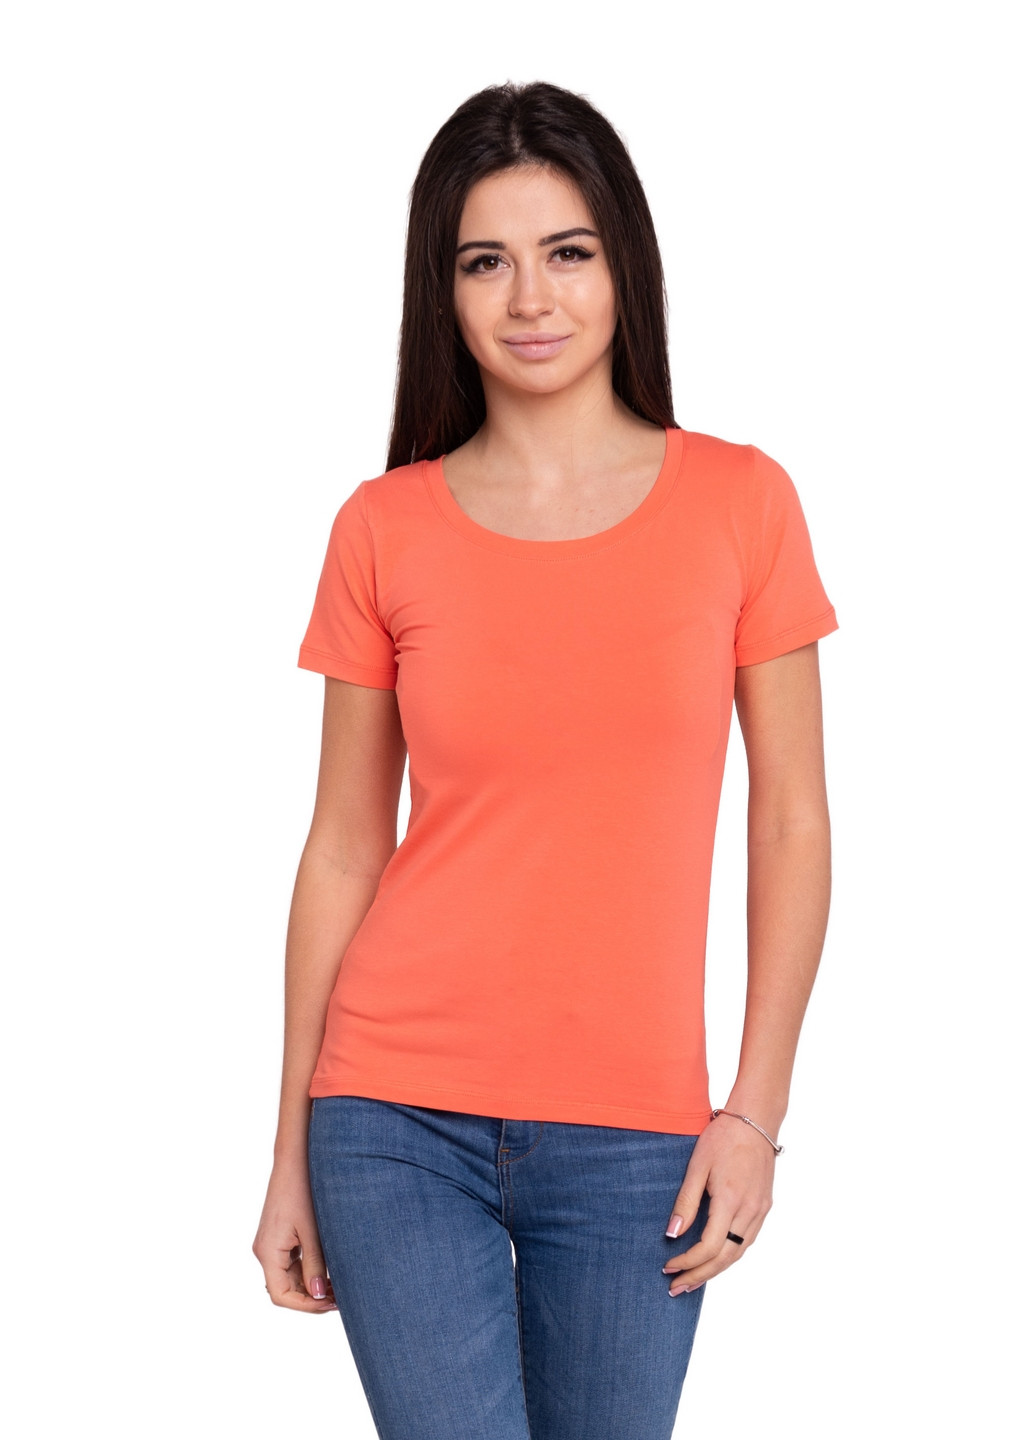 Коралловая всесезон футболка женская Наталюкс 41-2347